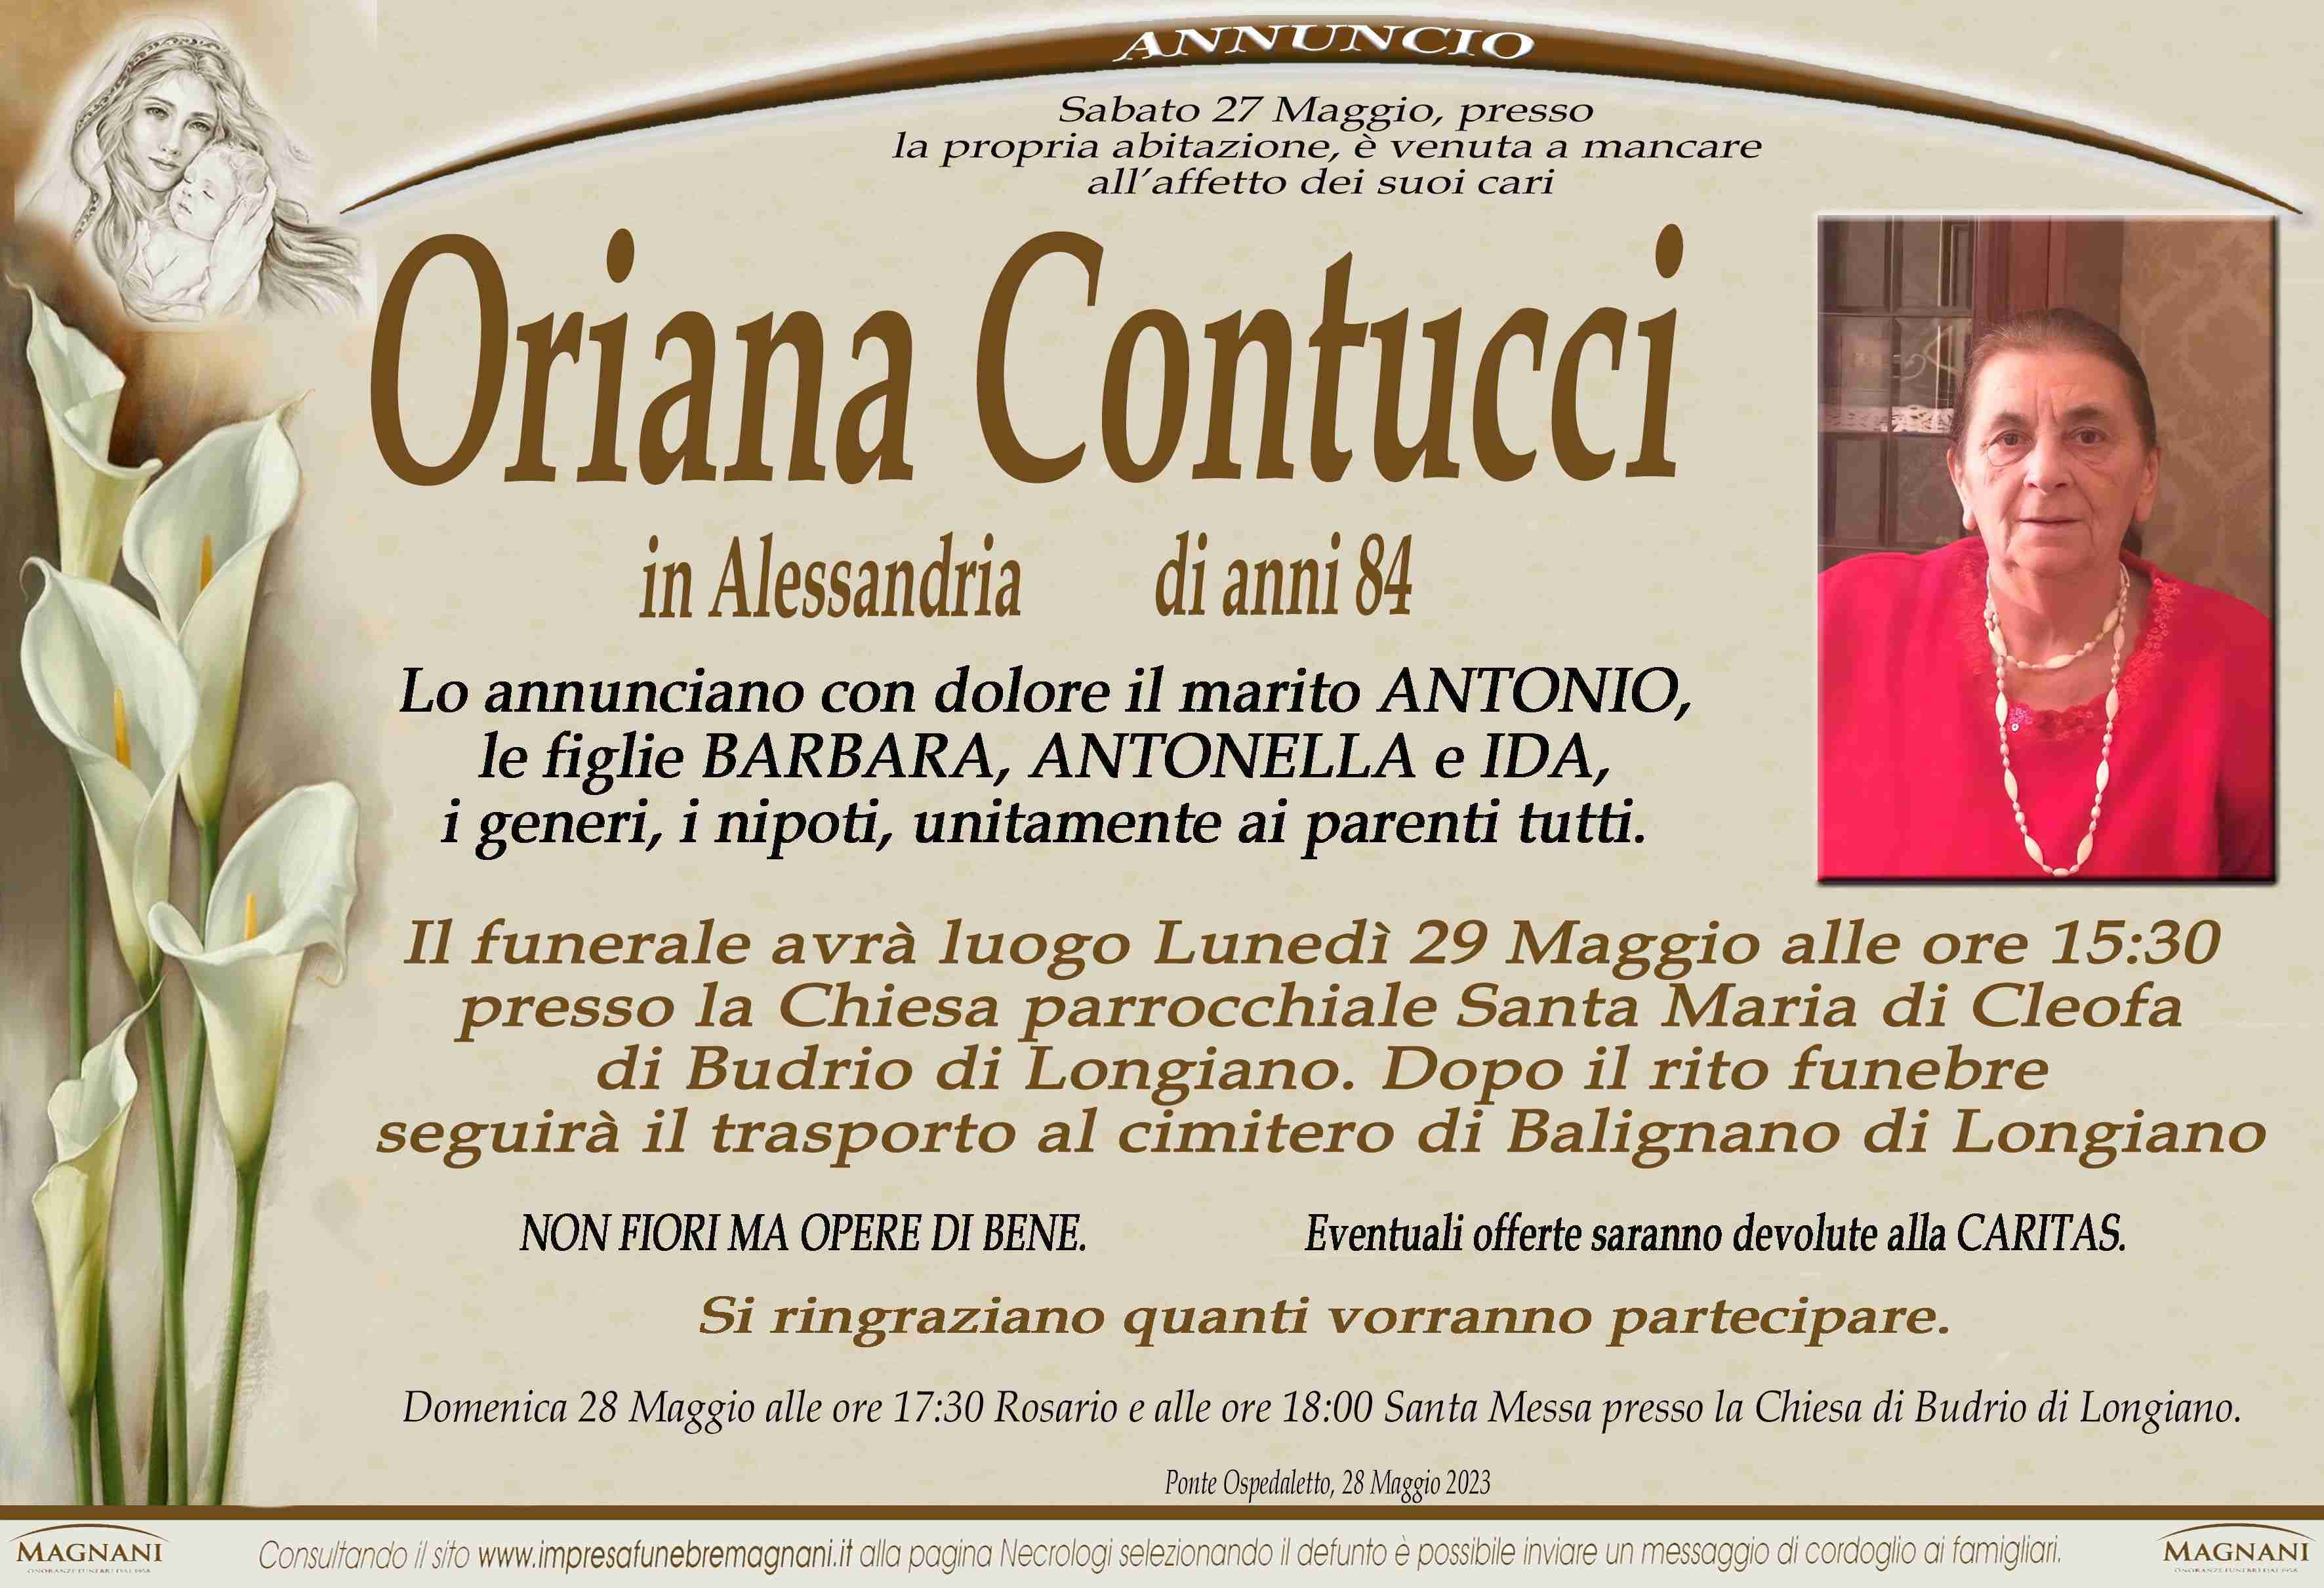 Contucci Oriana